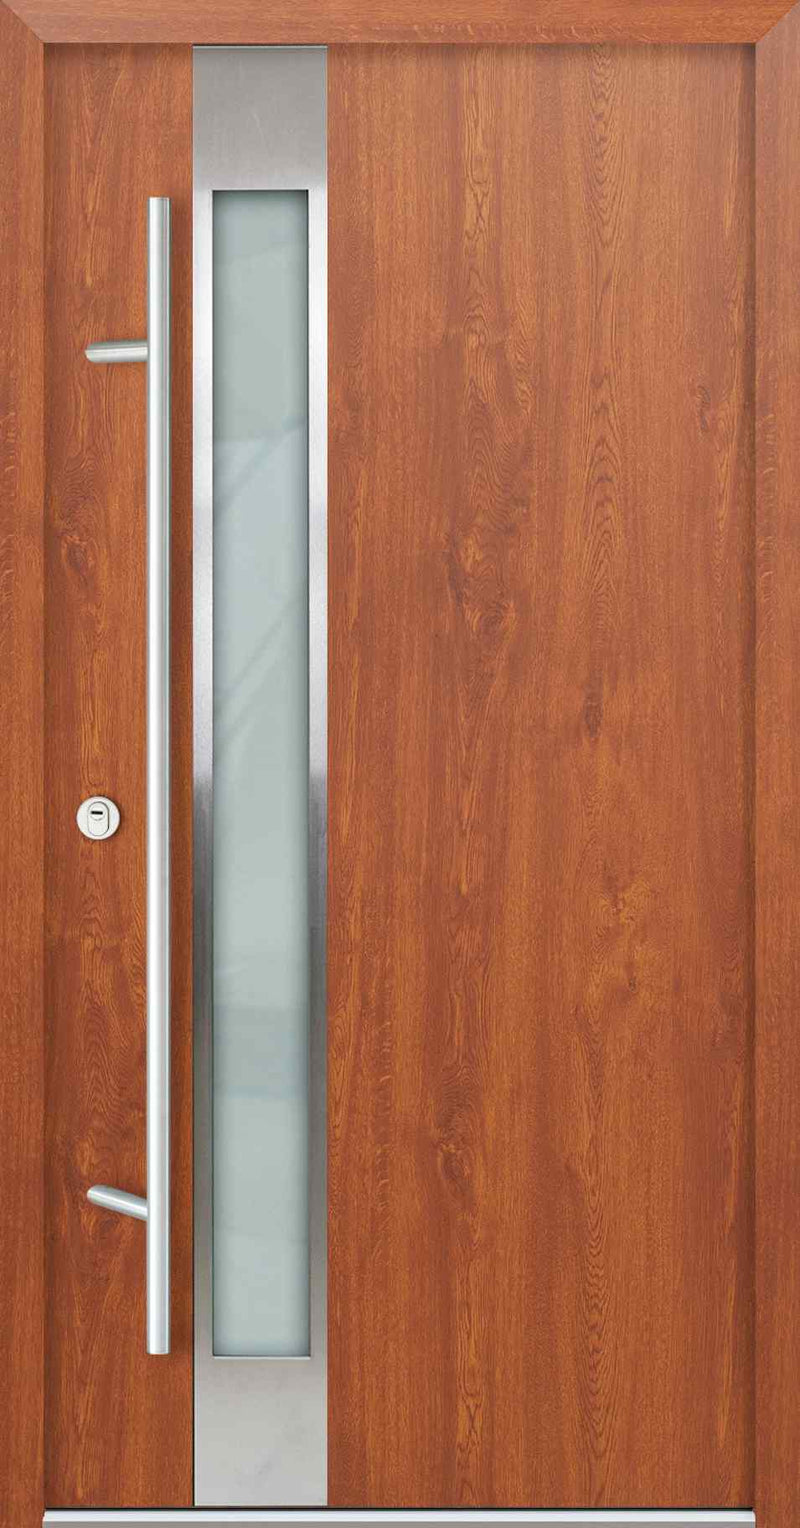 Turenwerke AC68 Design 14 Steel Door - Golden Oak